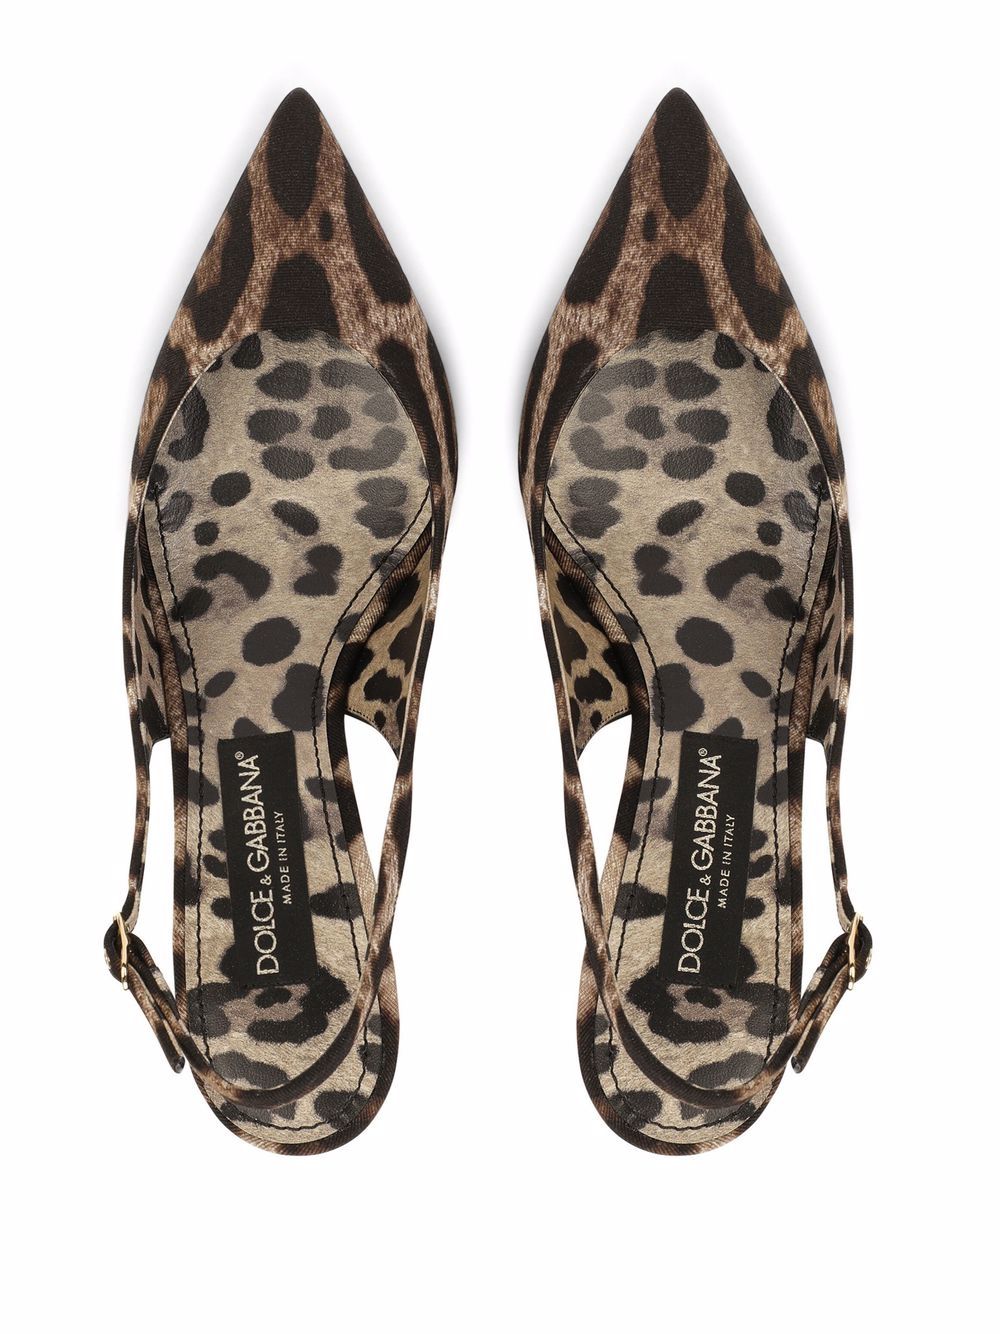 фото Dolce & gabbana туфли с ремешком на пятке и леопардовым принтом